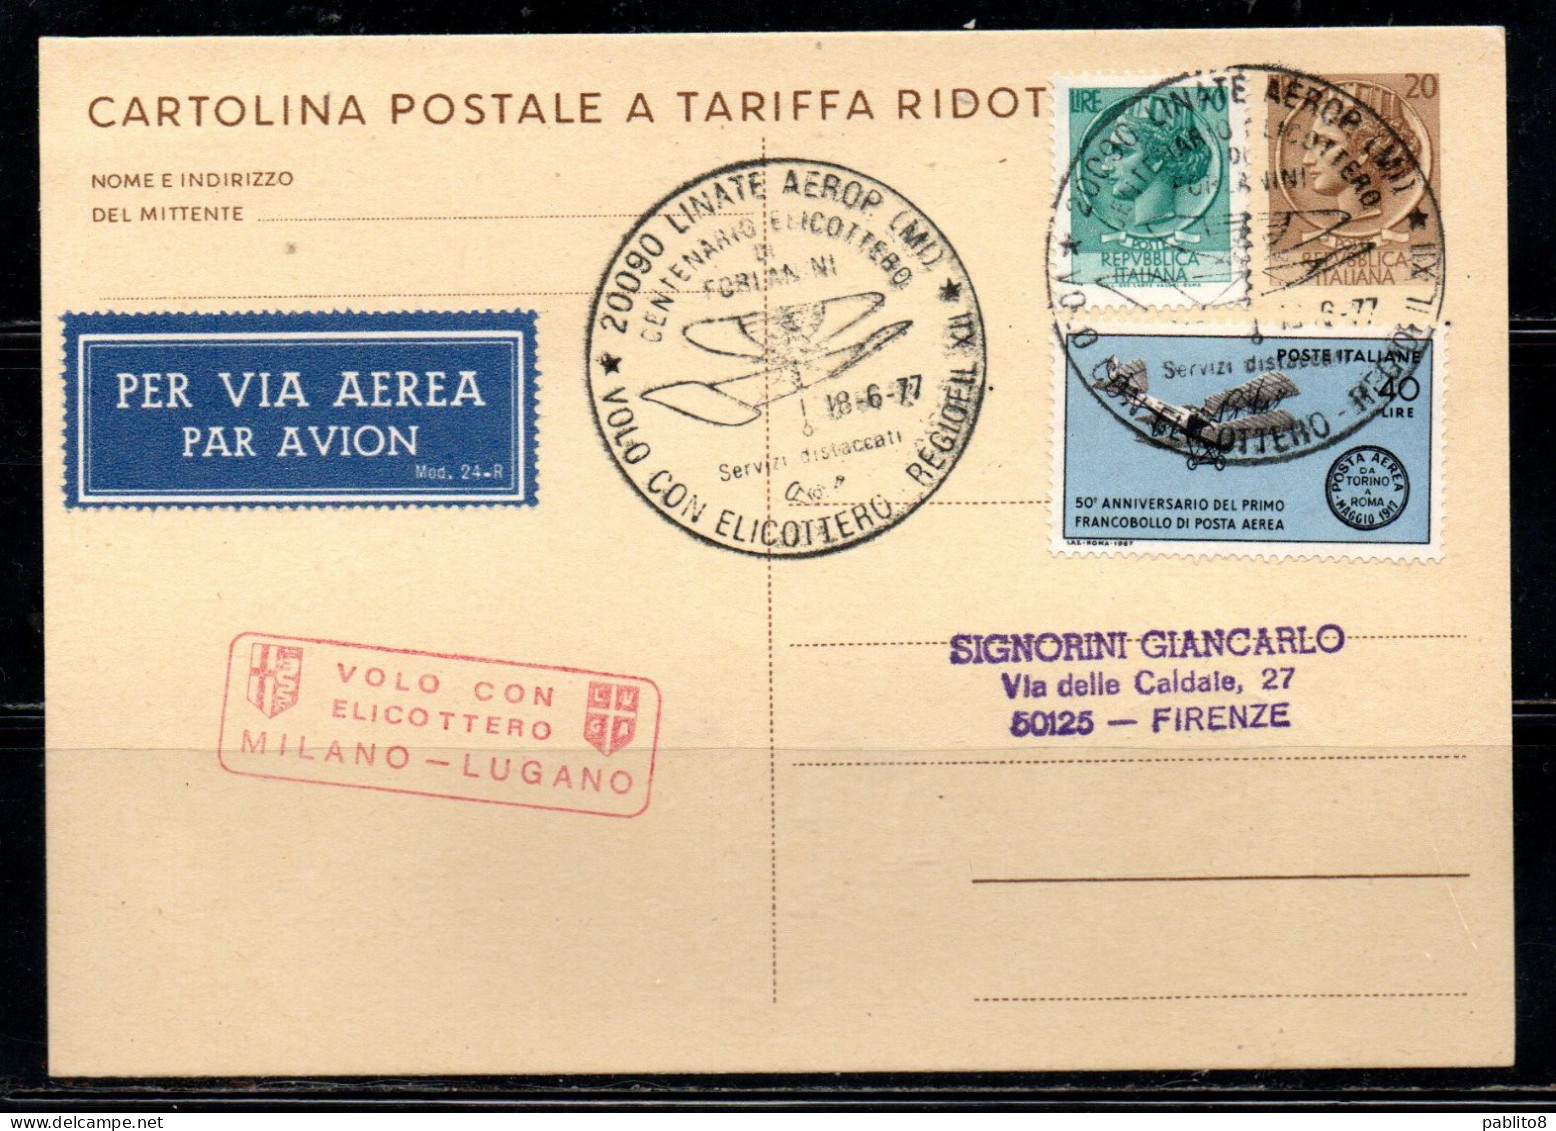 ITALIA REPUBBLICA ITALY REPUBLIC CARTOLINA POSTALE 18-6-1977 VOLO CON ELICOTTERO MILANO - LUGANO FORLANINI VIAGGIATA - Postwaardestukken